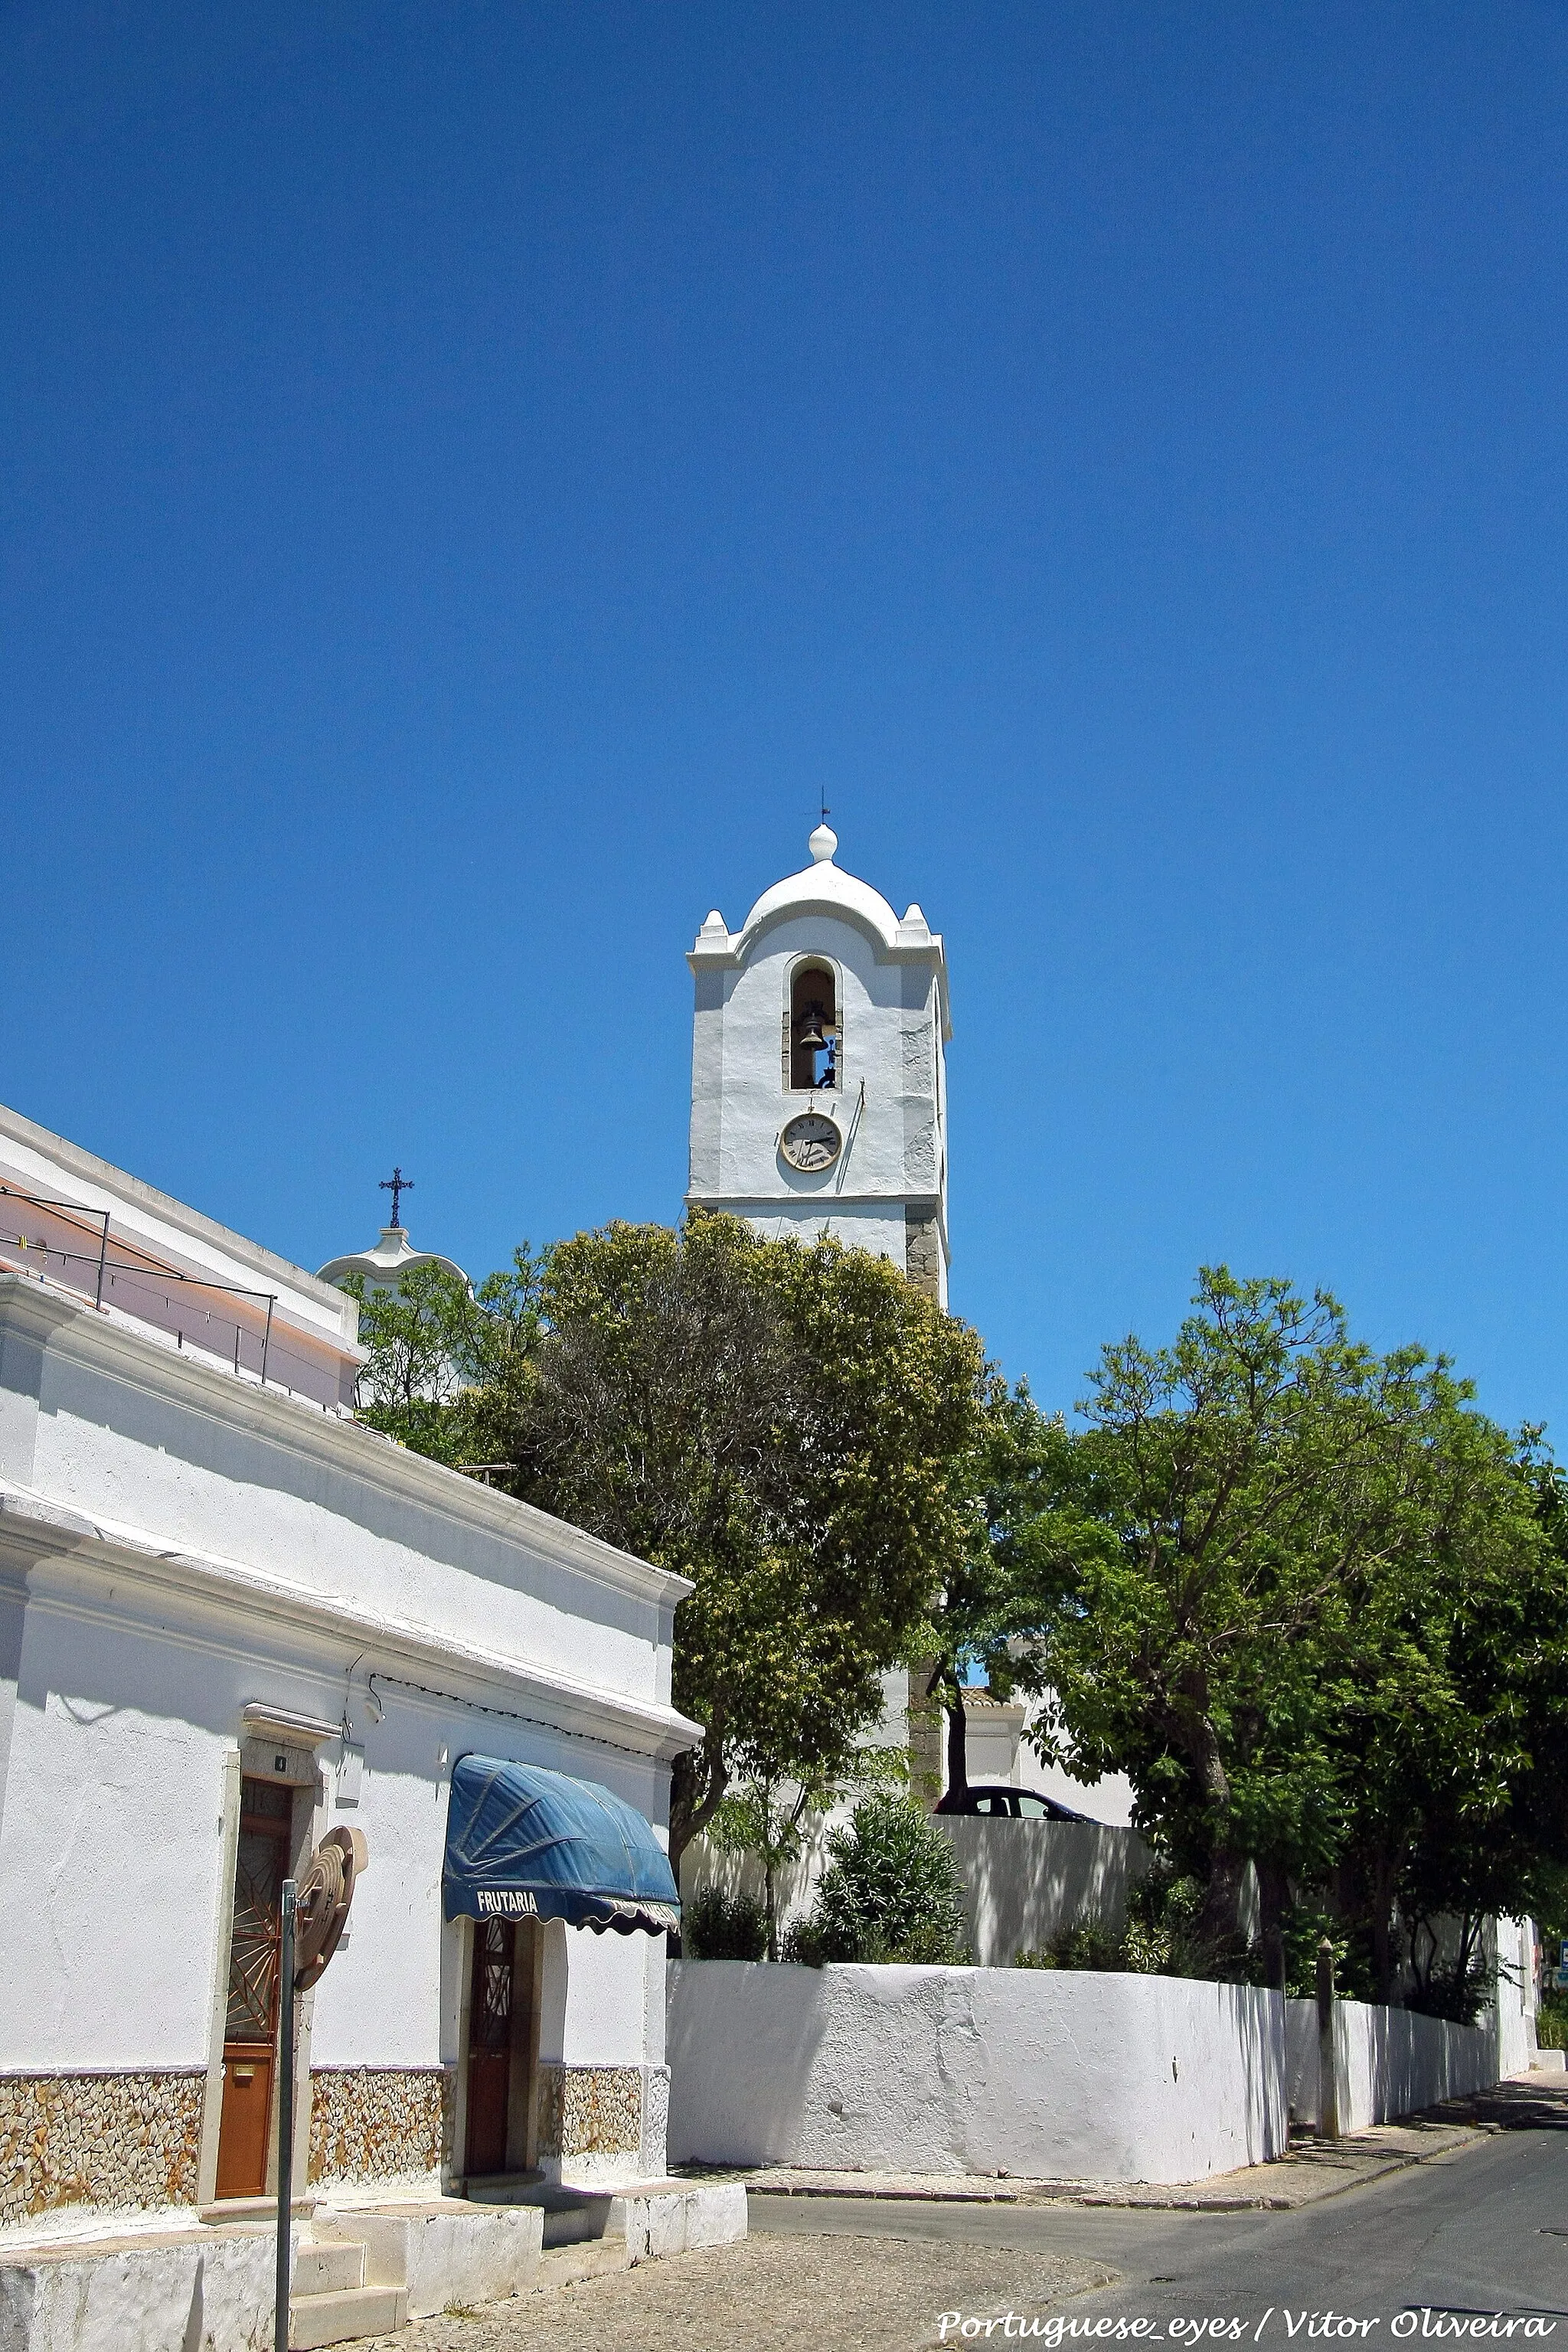 Image of Santa Bárbara de Nexe